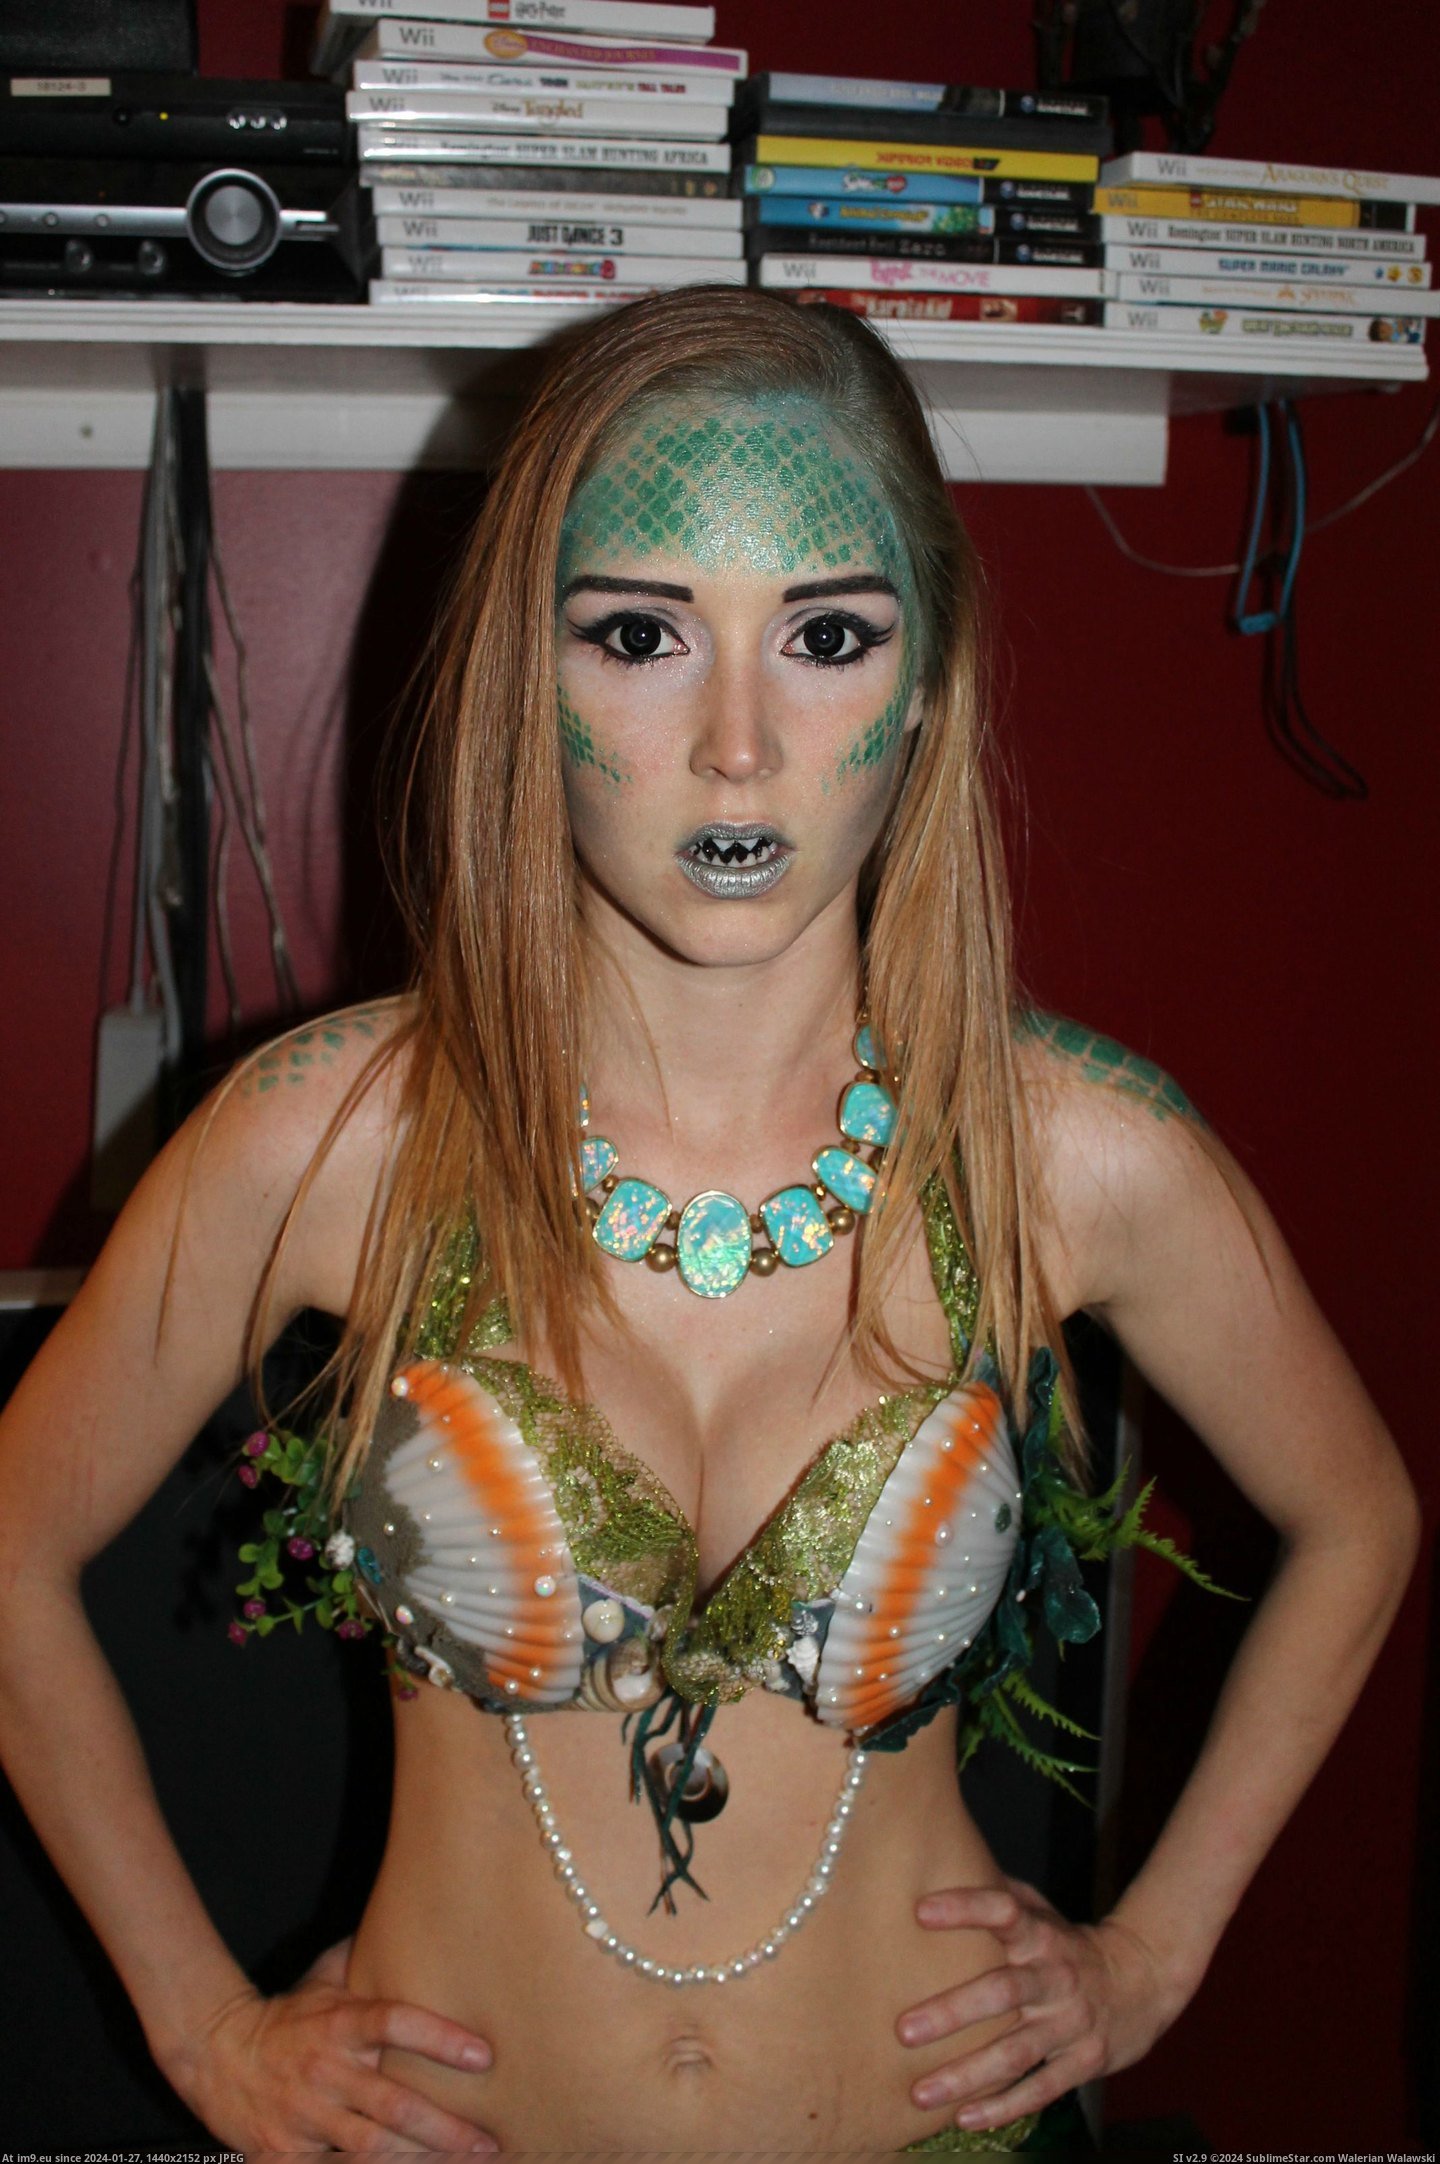 #Costume #Homemade #Mermaid [Pics] My homemade mermaid costume! 4 Pic. (Bild von album My r/PICS favs))